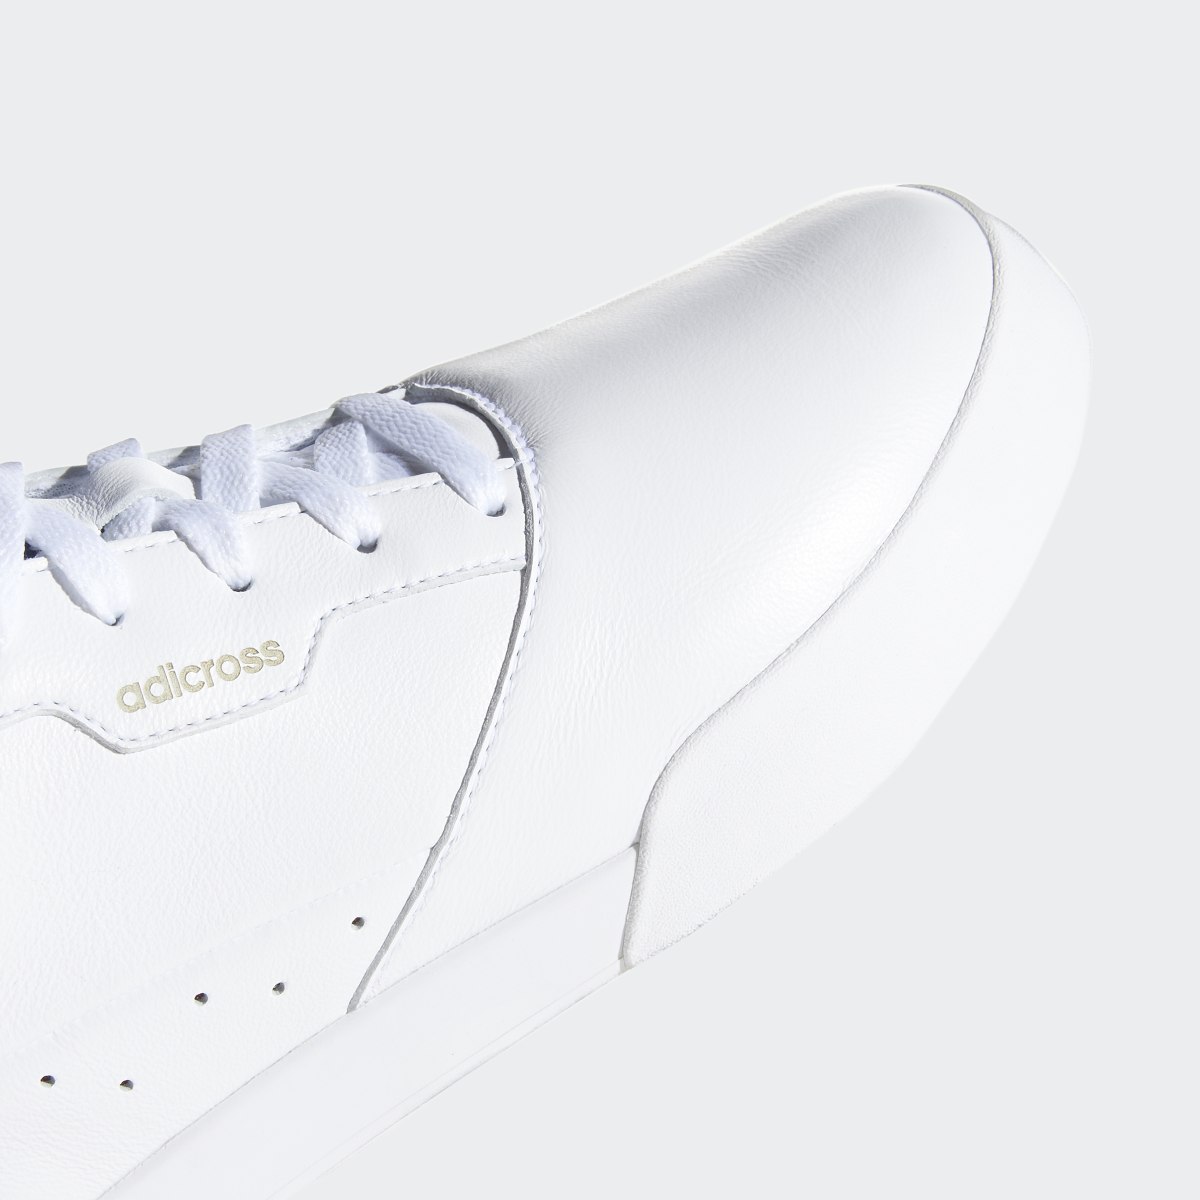 Adidas Scarpe da golf adicross Retro. 13